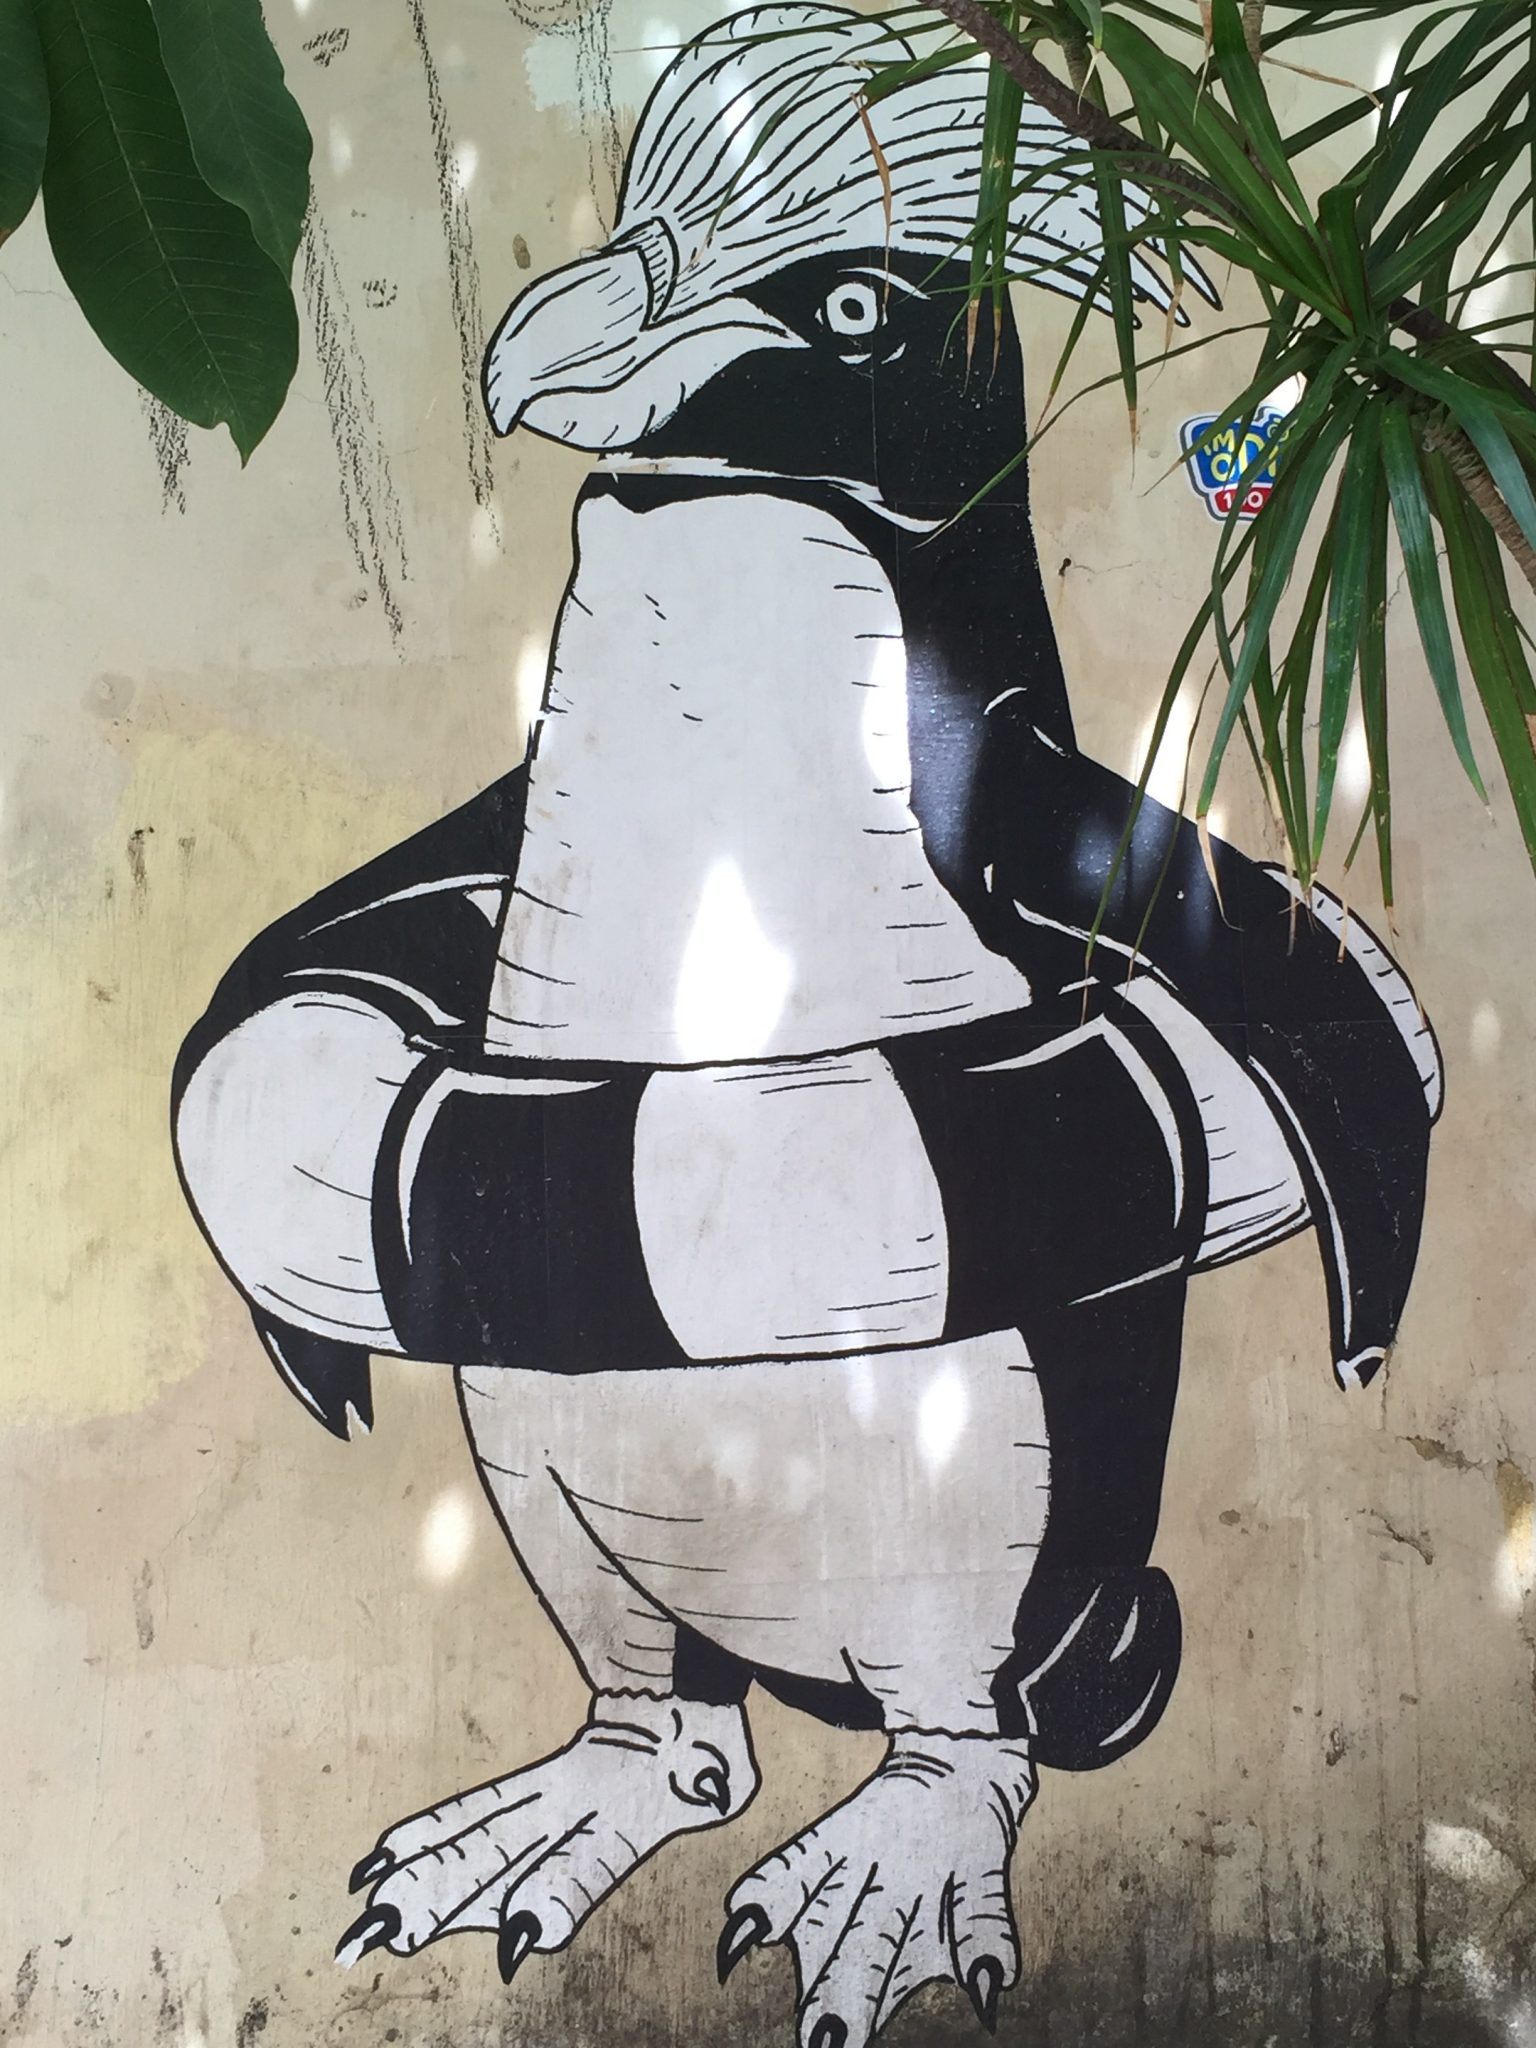 Penguin in a life preserver, in the Santa Teresa neighborhood of Rio de Janeiro. Photo: Peg Malloy